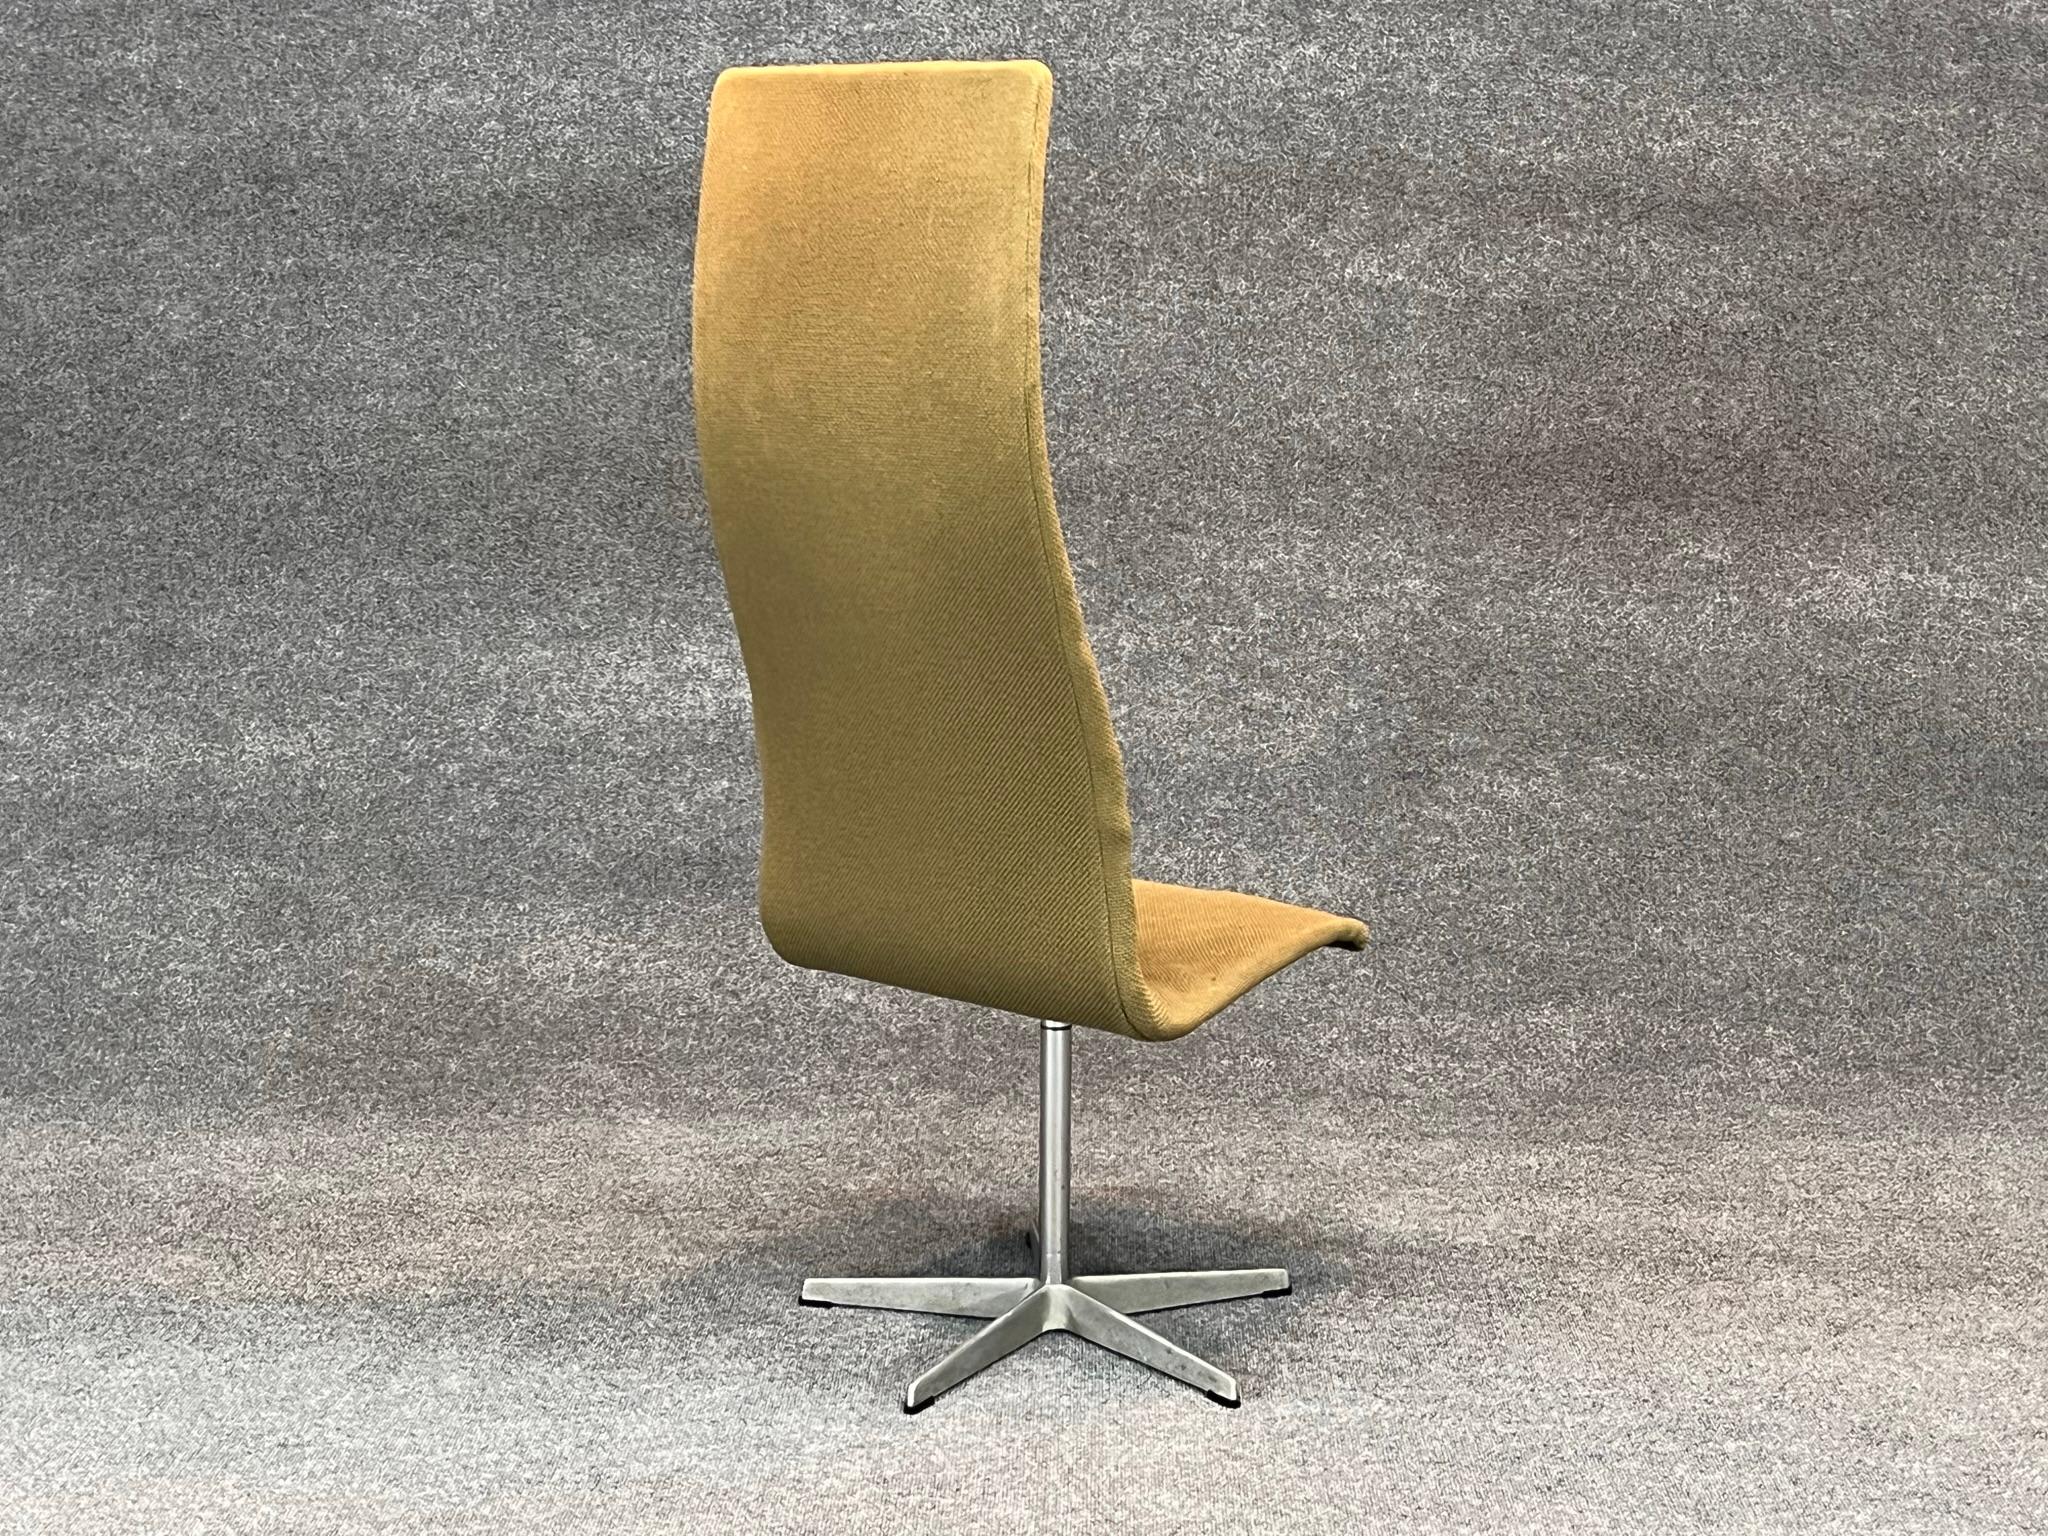 Danish Modern High Back Swivel Oxford chair by Arne Jacobsen for Fritz Hansen 1